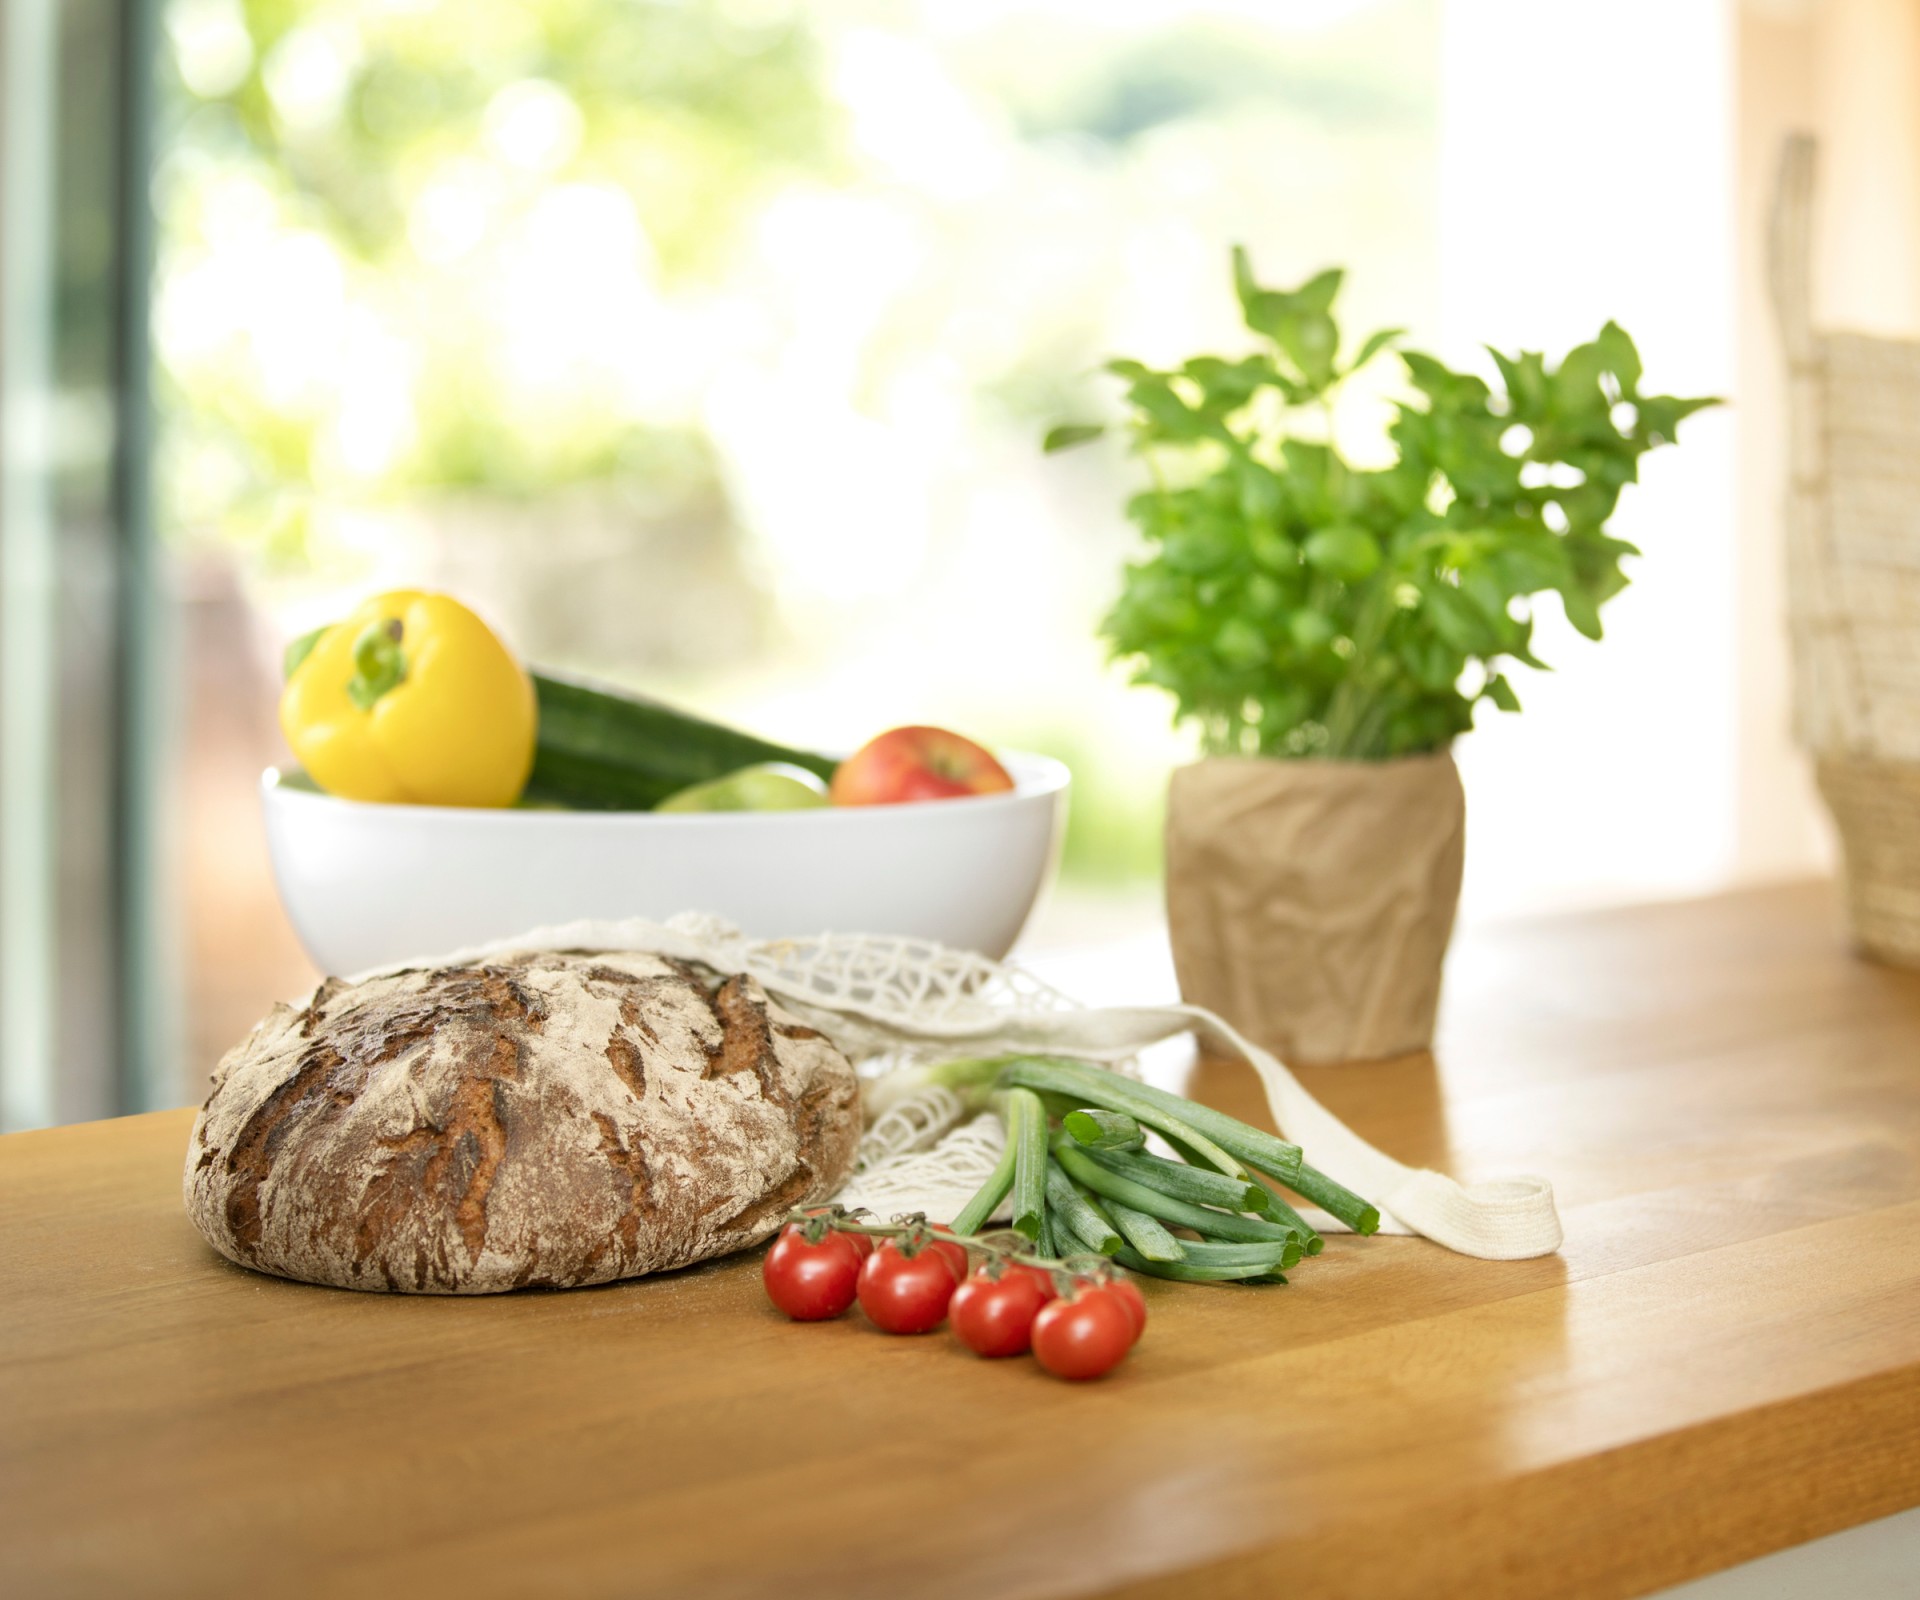 Auf einem Holztisch liegen ein Brot, Tomaten, Basilikum und eine Schale mit Gemüse